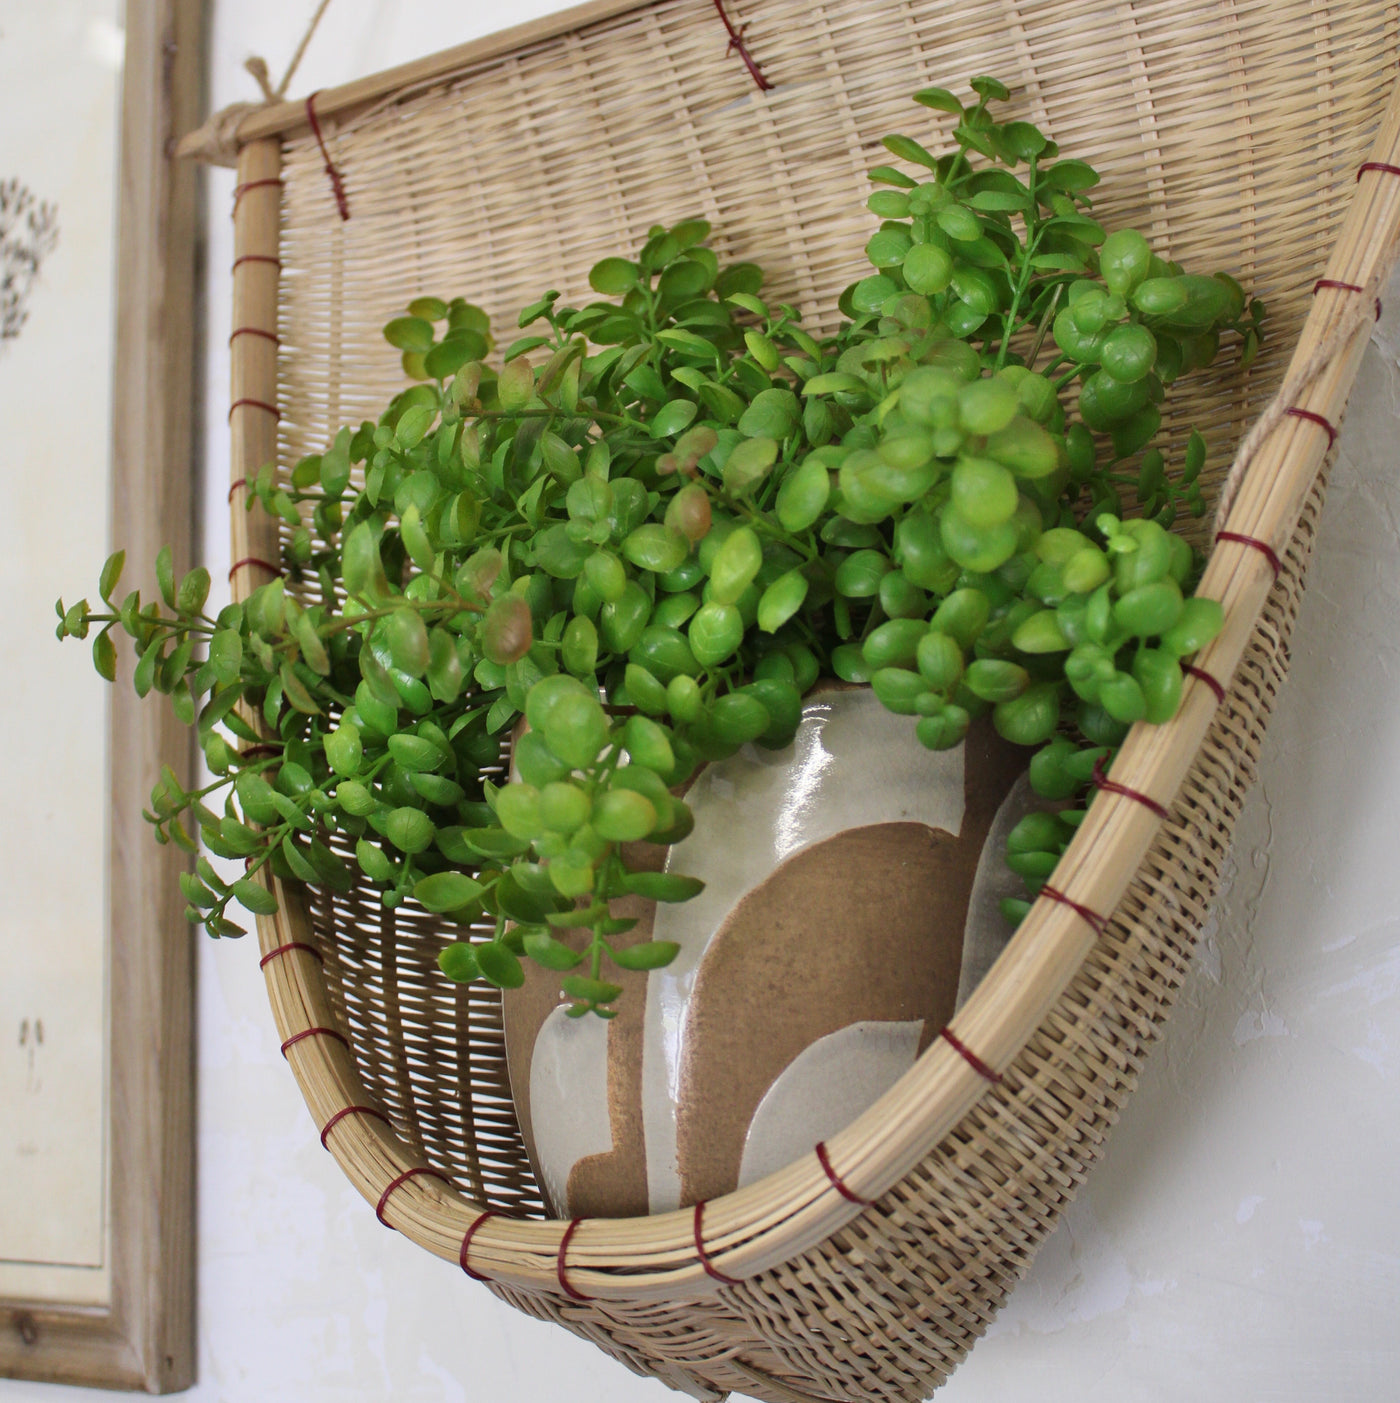 Bamboo Harvest Basket/Sconce